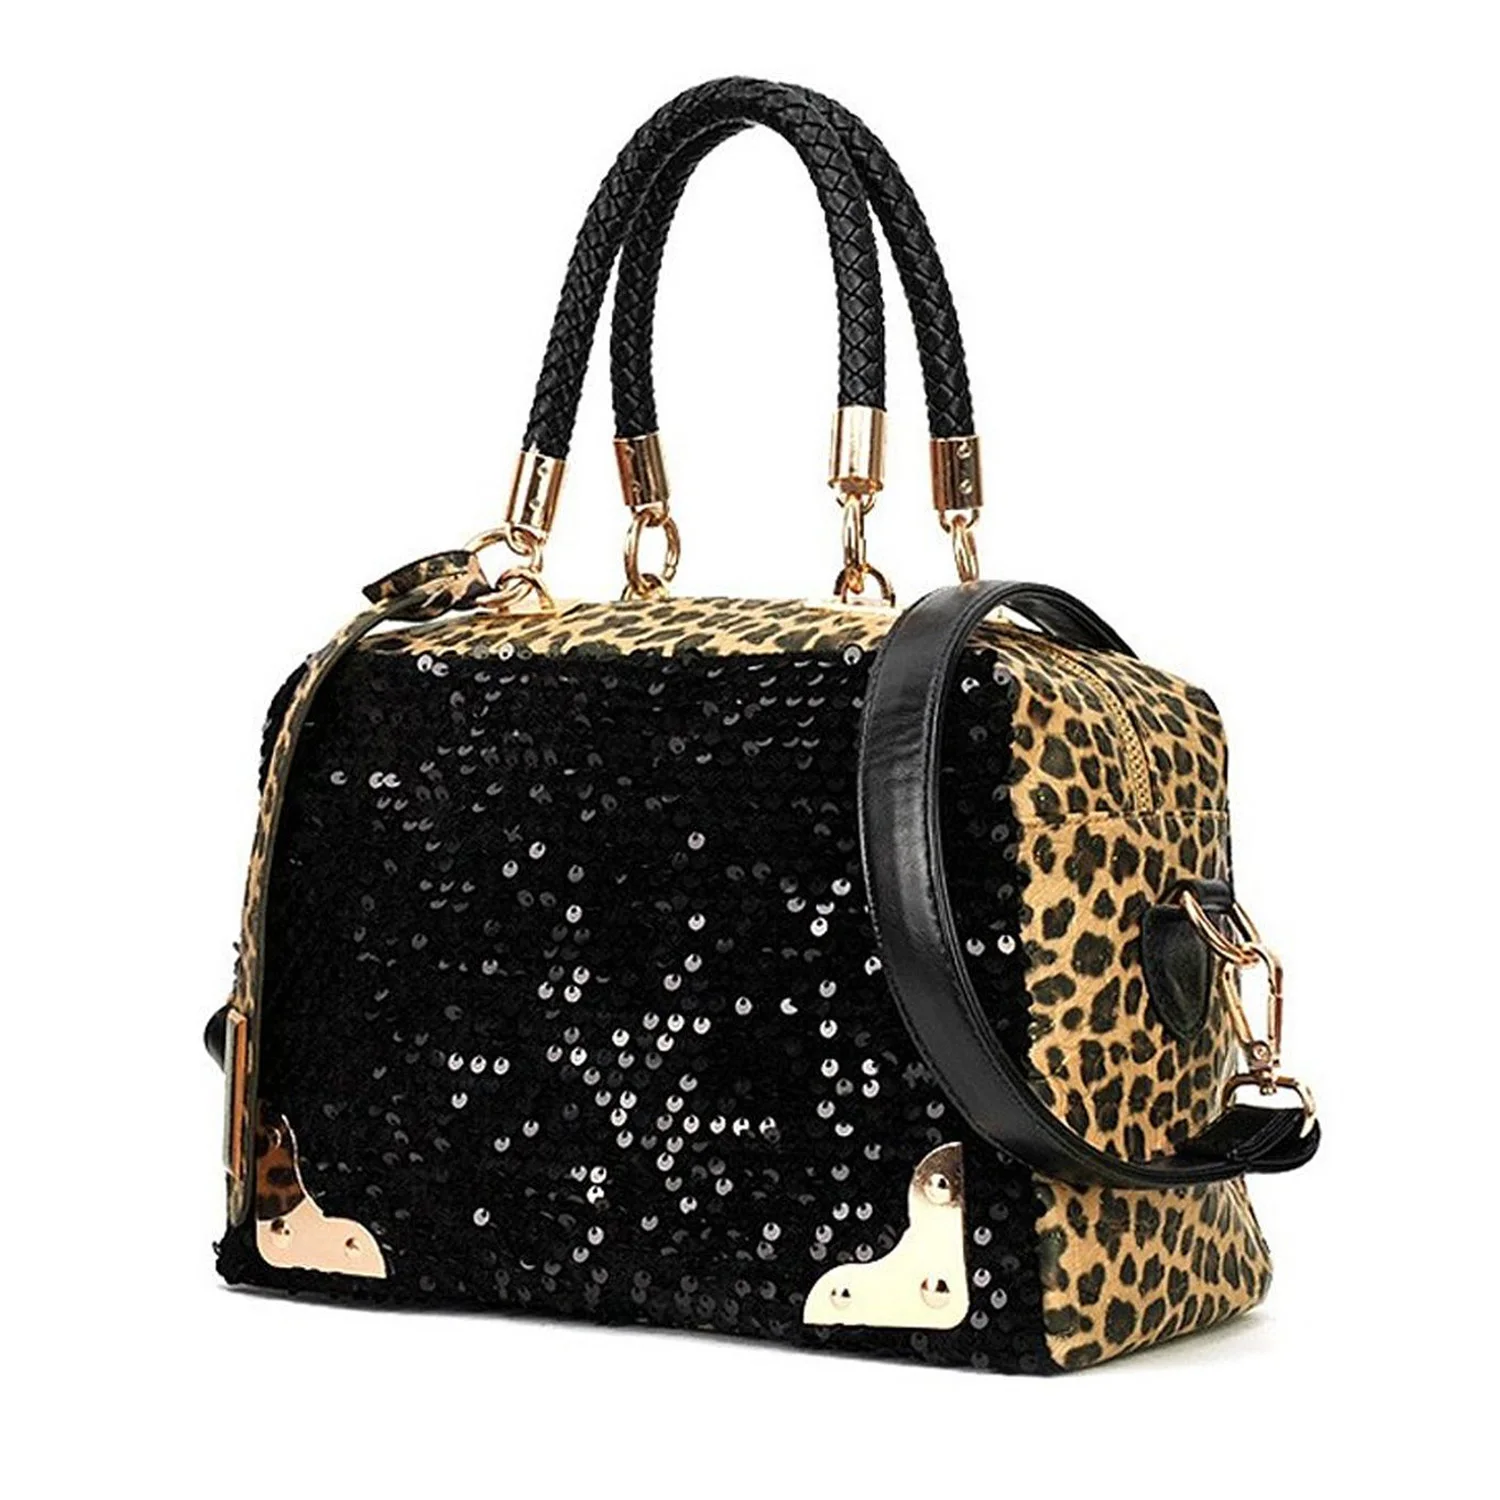 ФОТО 10pcs( ASDS Casual Women Handbag PU Leather Leopard Print Paillette Sequin Shoulder Bag